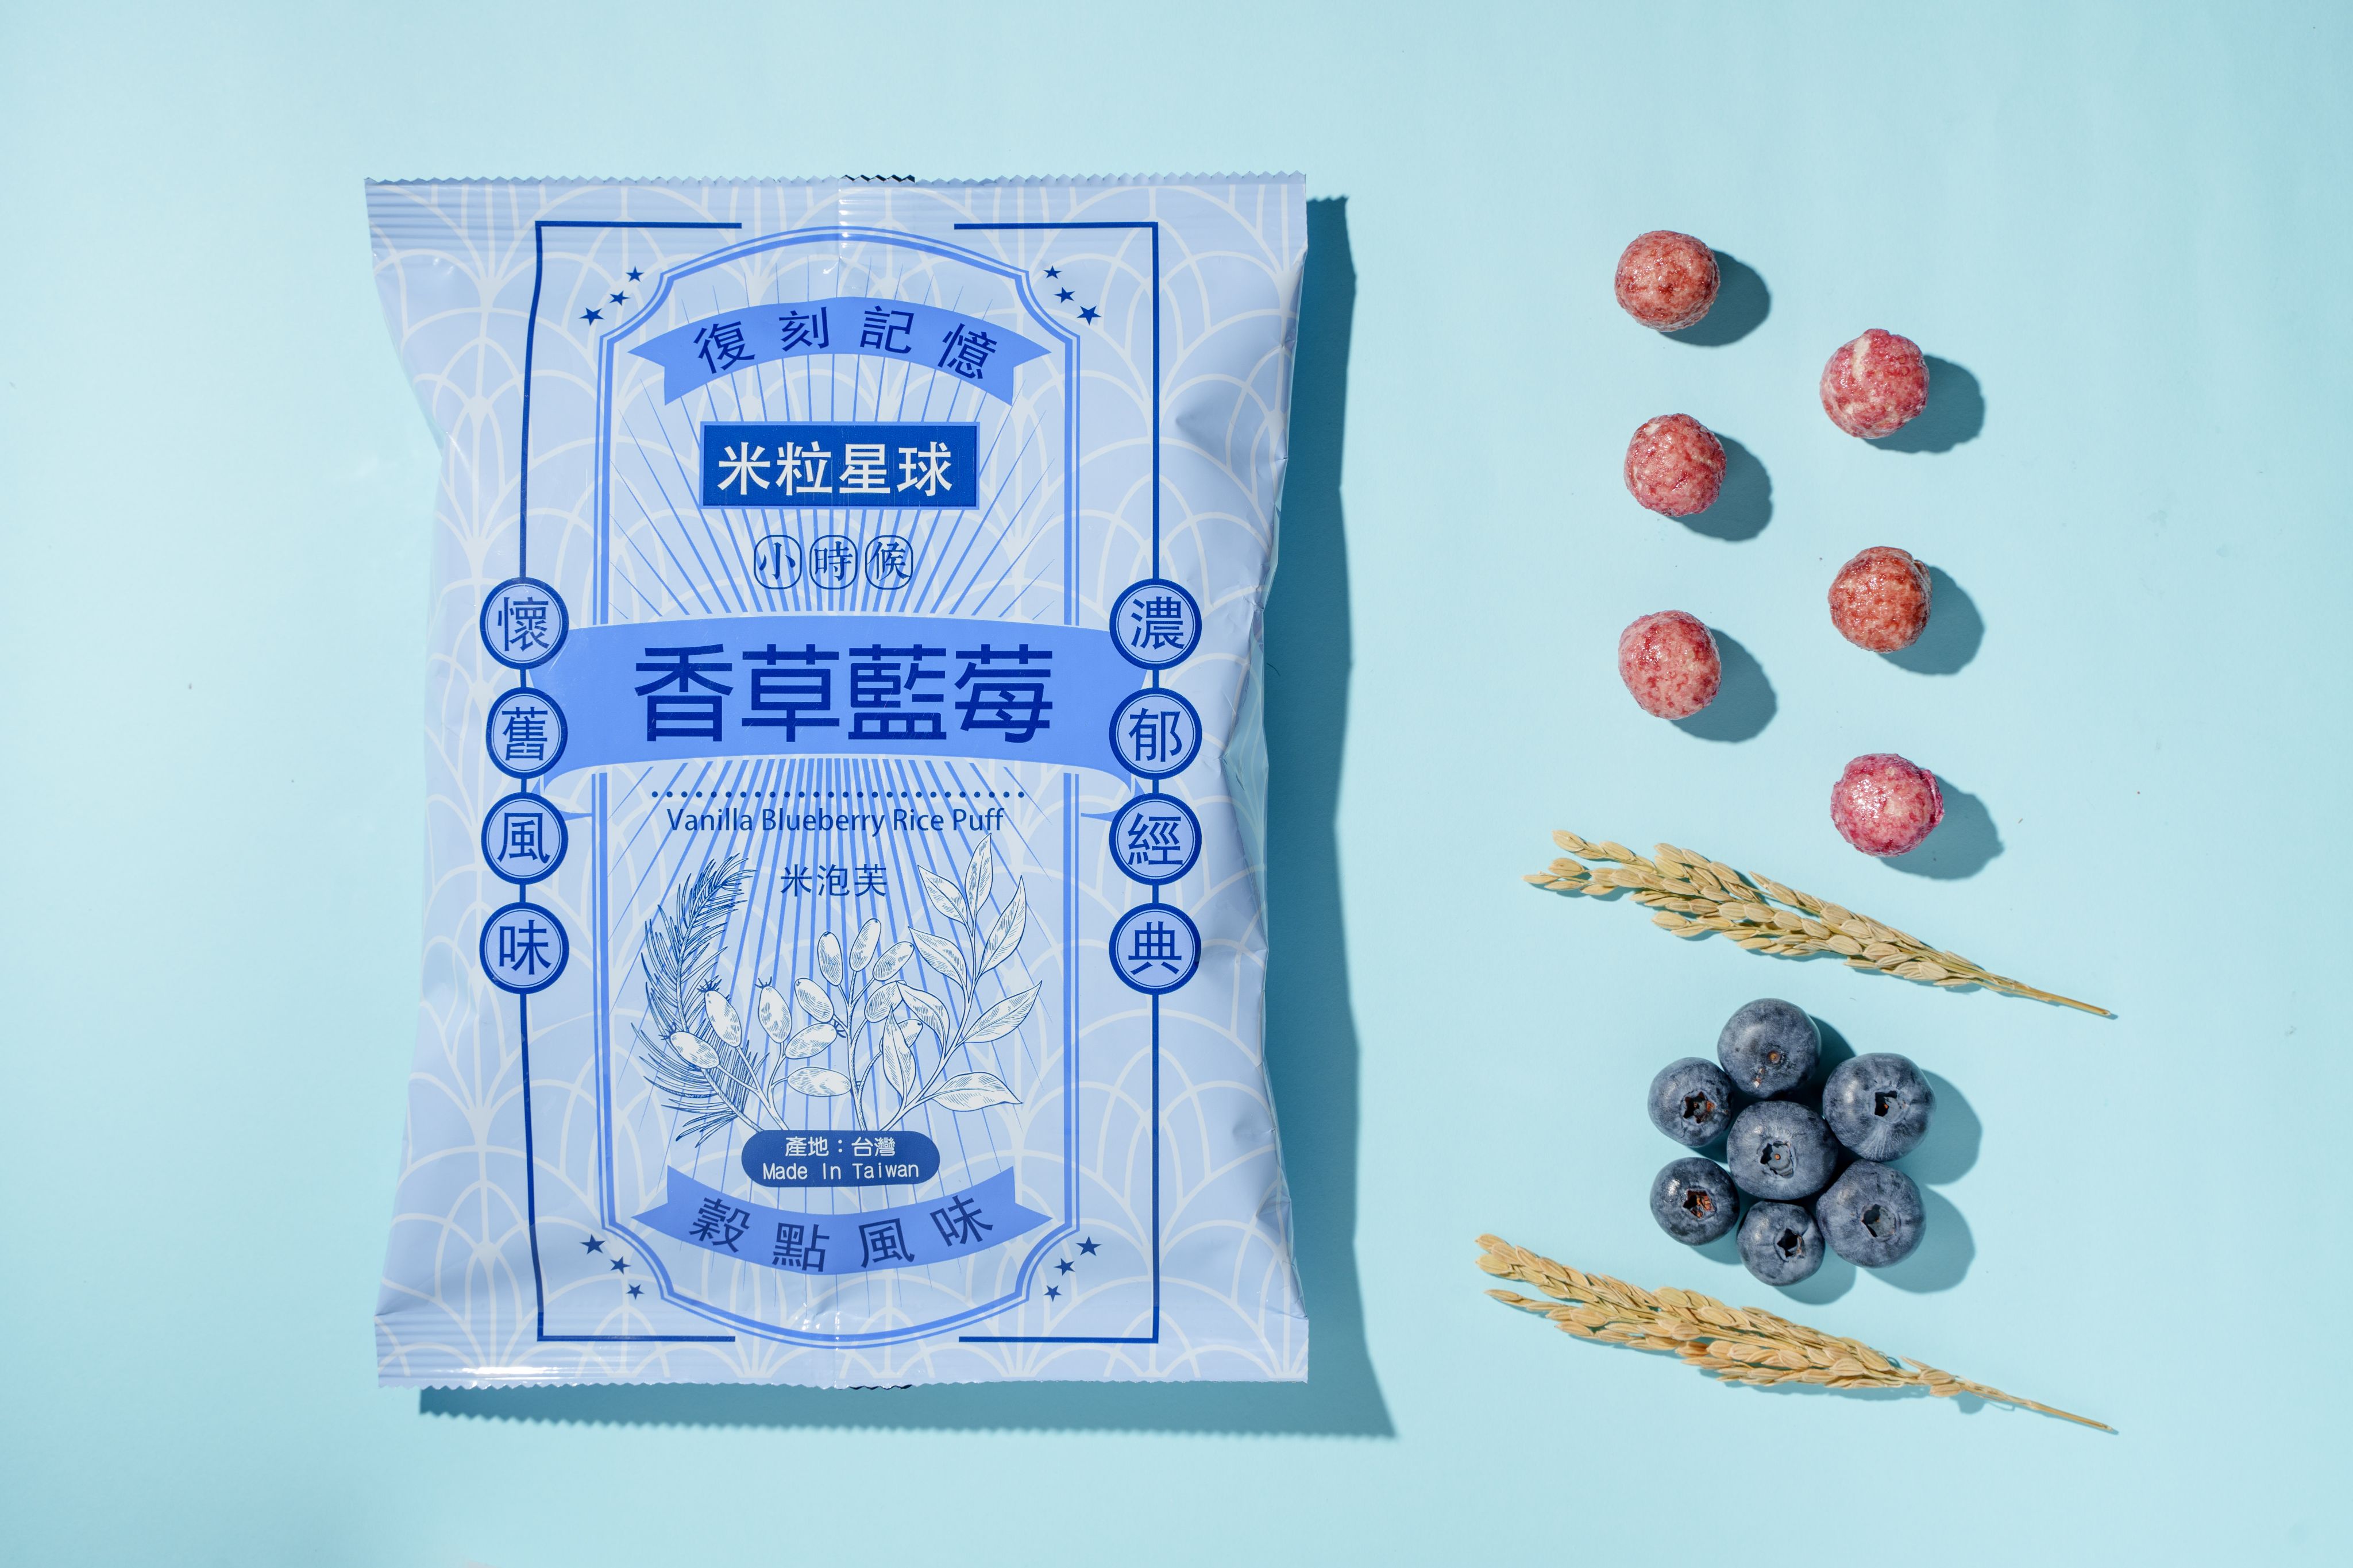 米粒星球 米泡芙60g-藍莓/醬燒